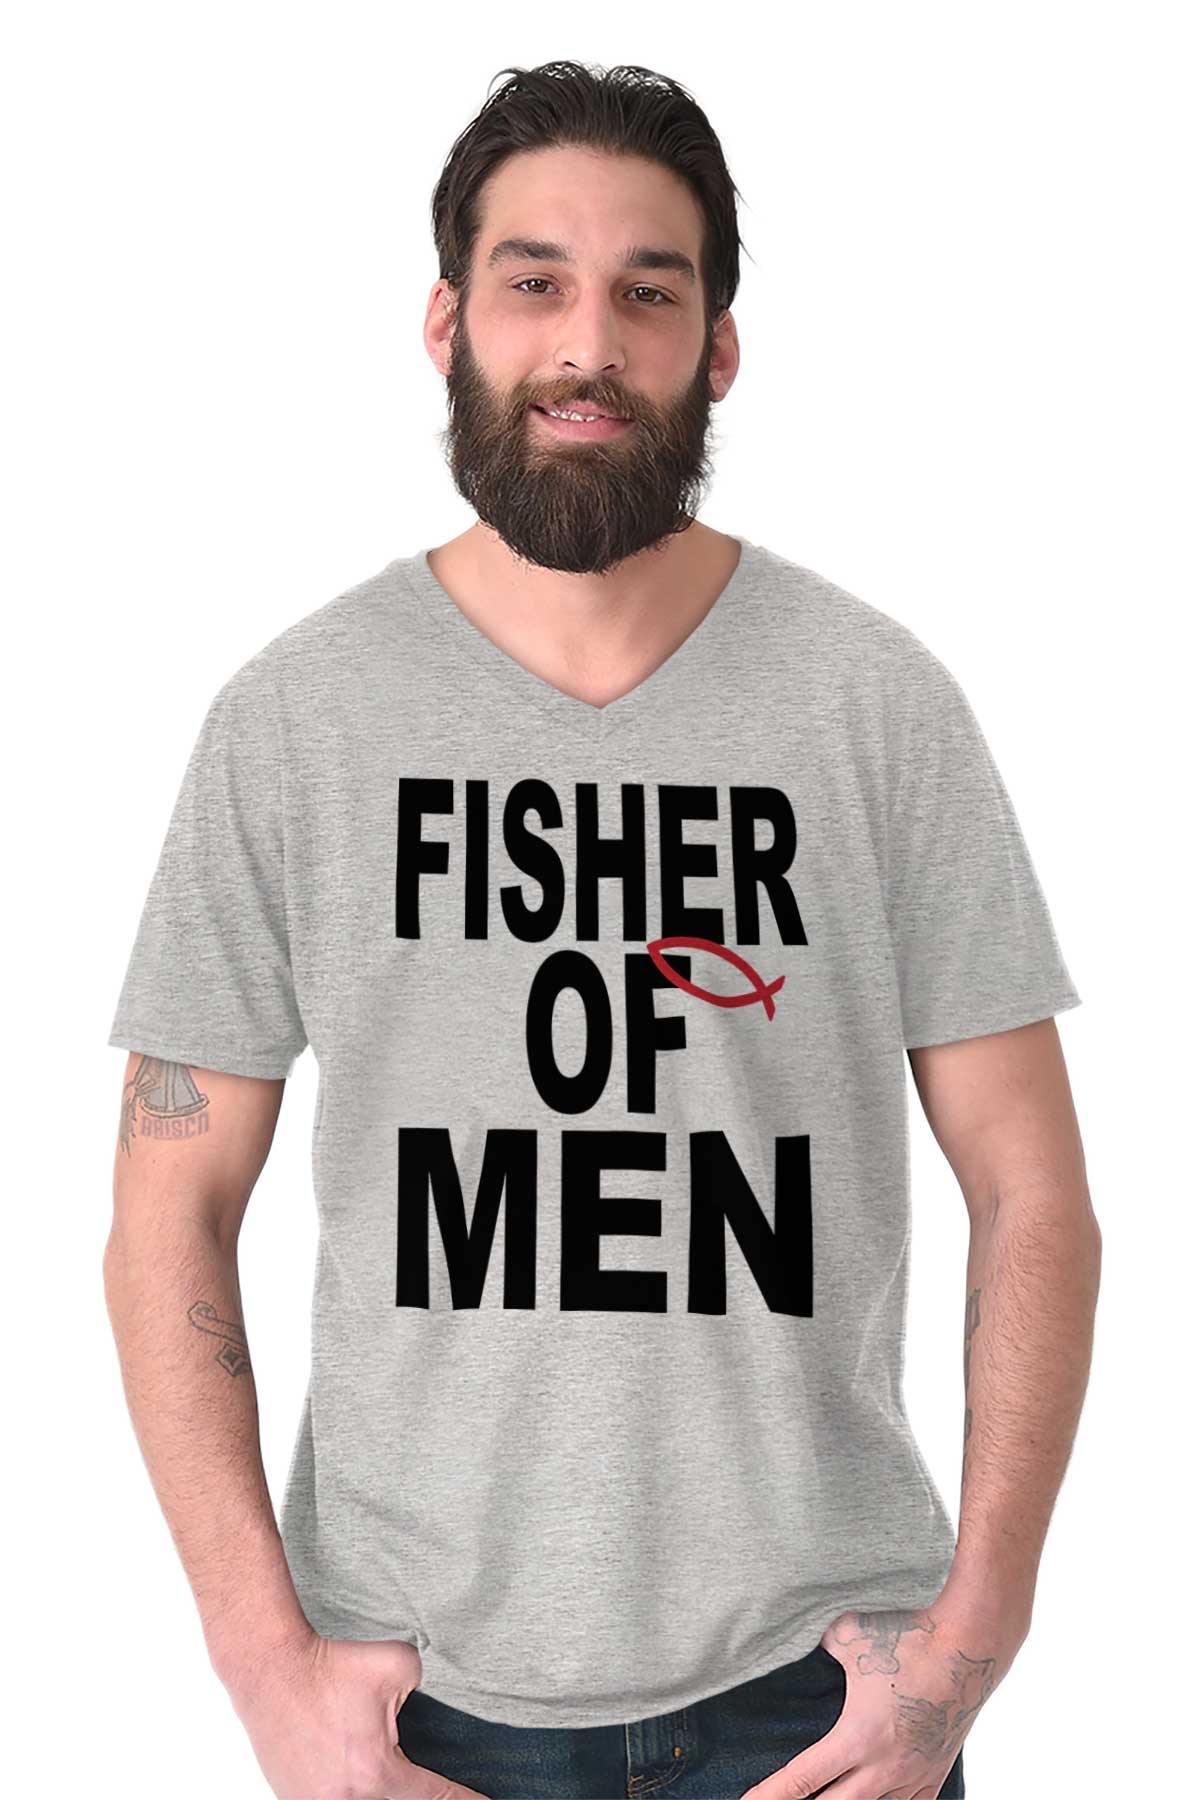 Christian Strong Fisher of Men V-Neck T-Shirt Men's Women's Christian Faith, Sport Grey / Small